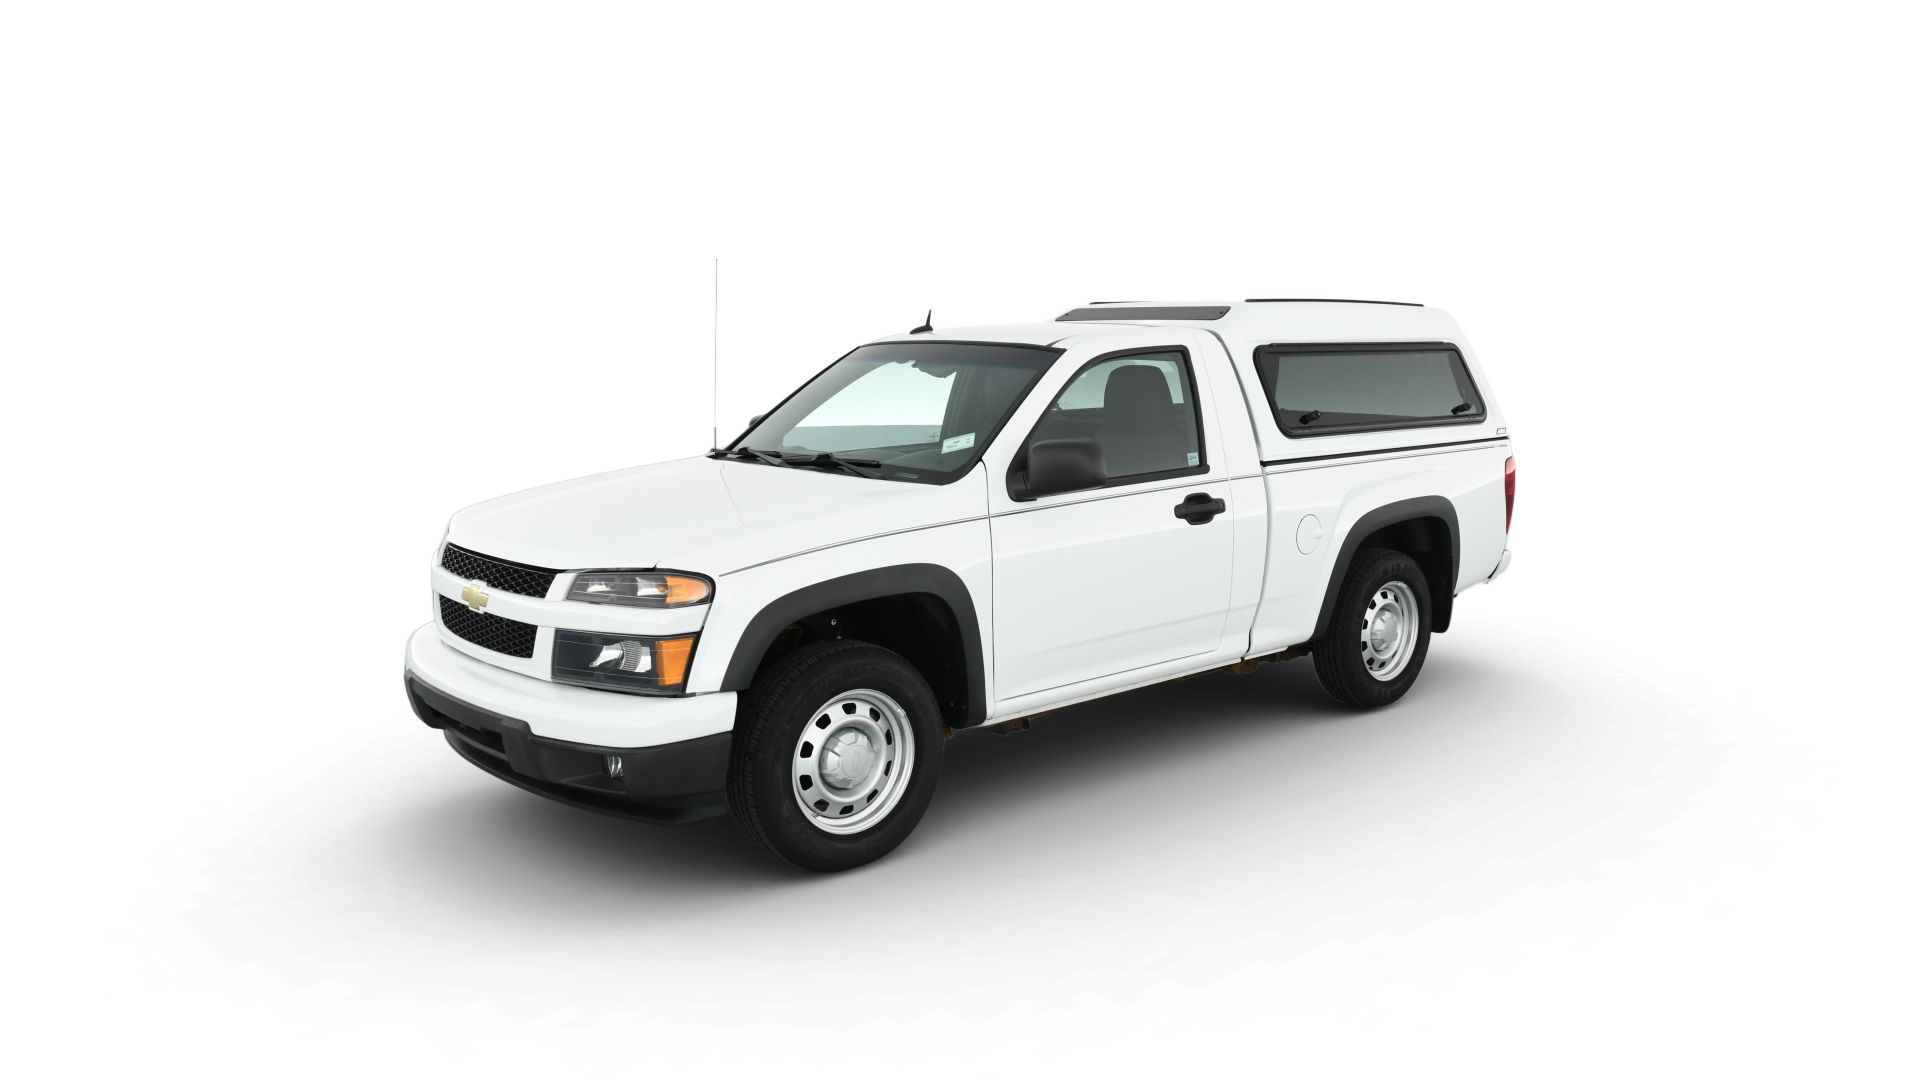 Chevrolet Colorado model image.